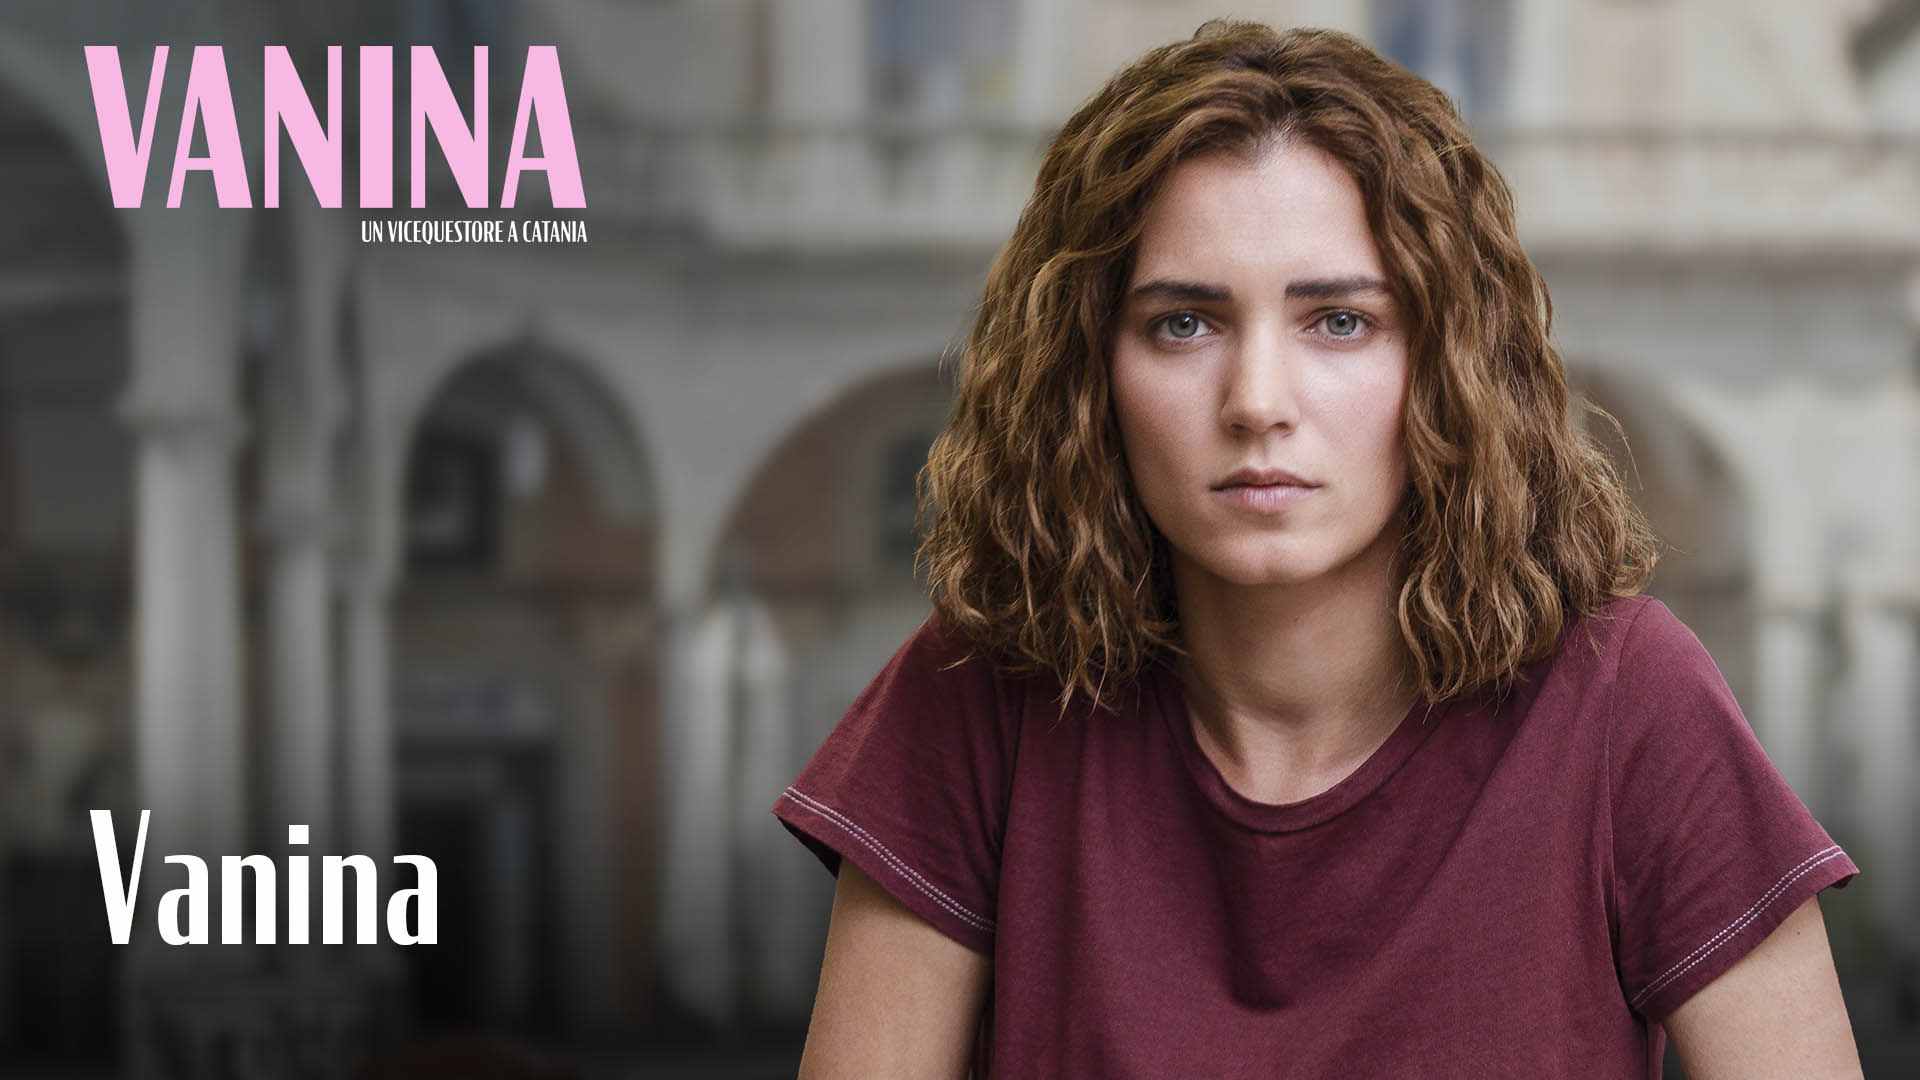 Vanina – Un vicequestore a Catania, come rivedere la replica della puntata